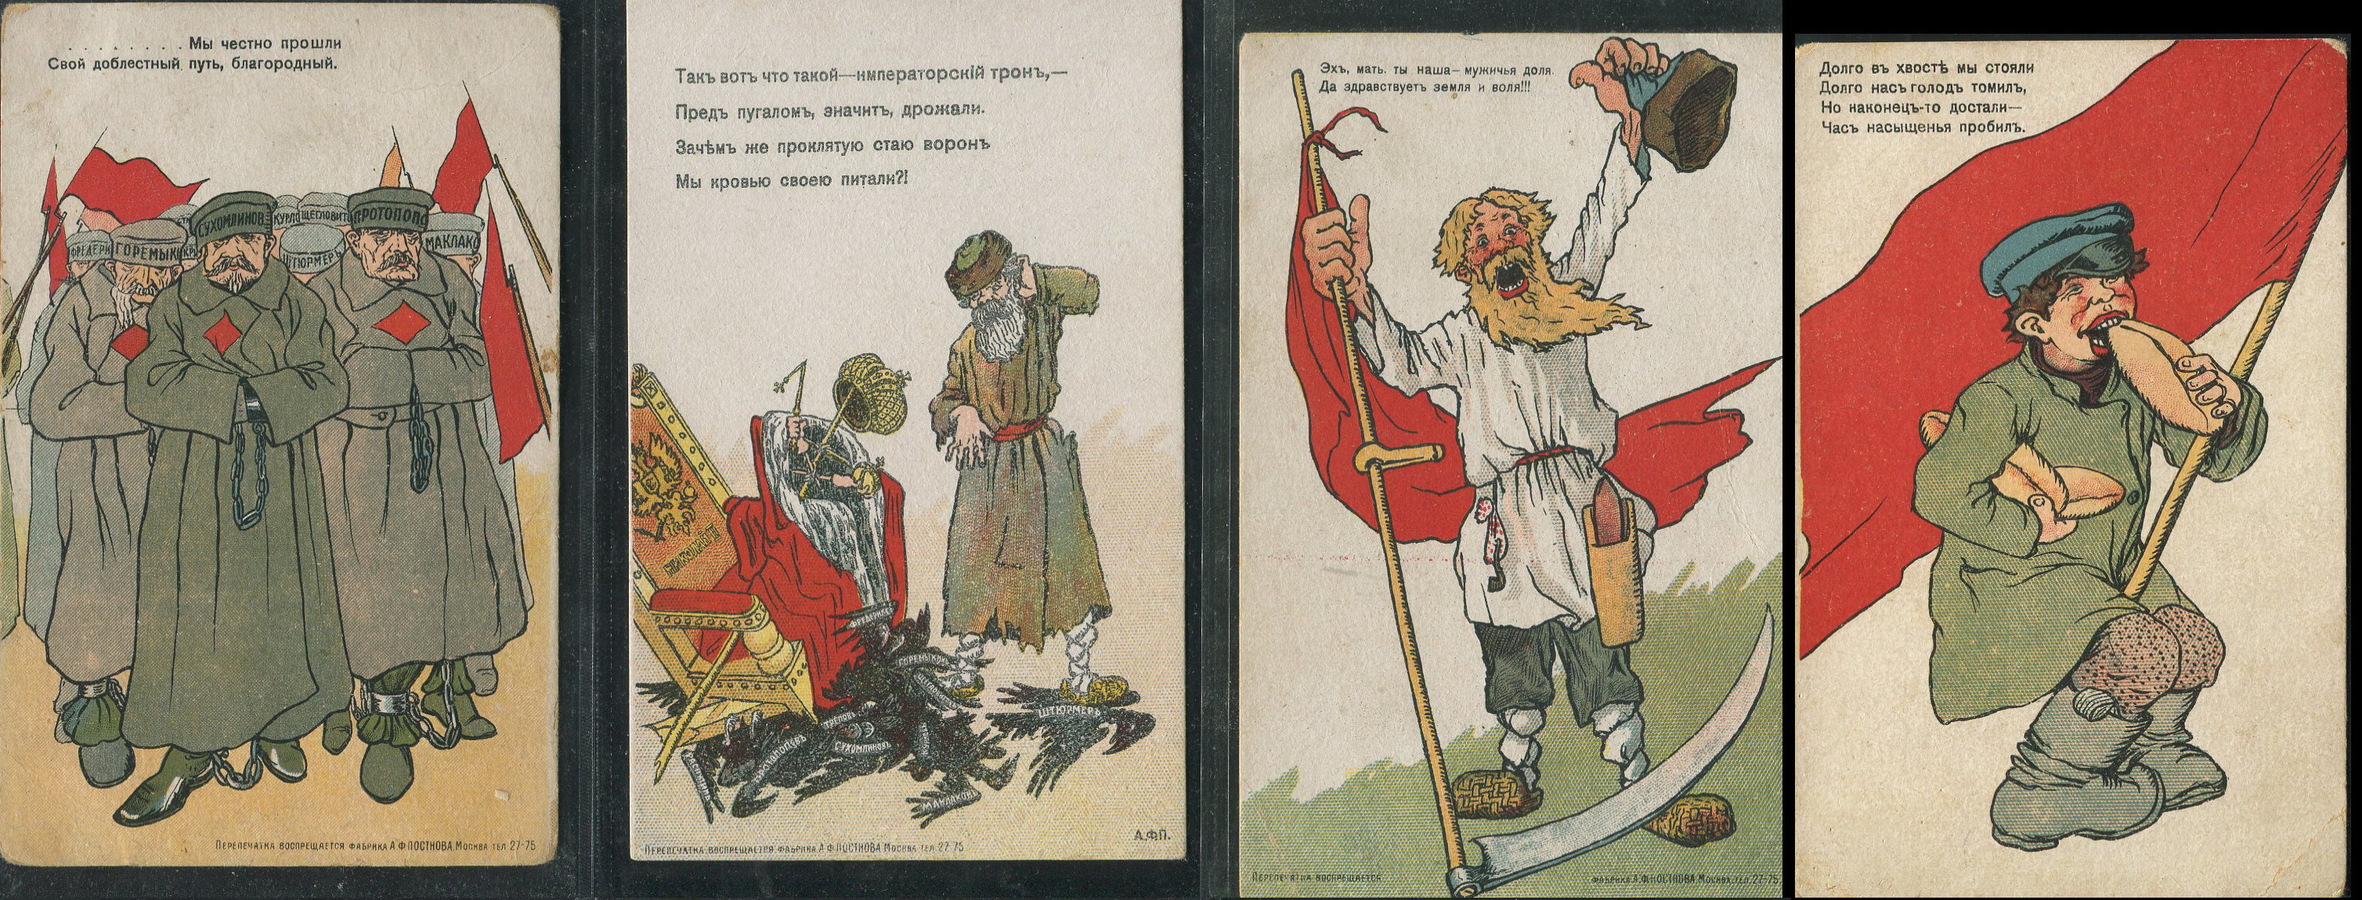 Комплект из 12-и открыток "Взгляд современника на события и последствия февральской революции в России"